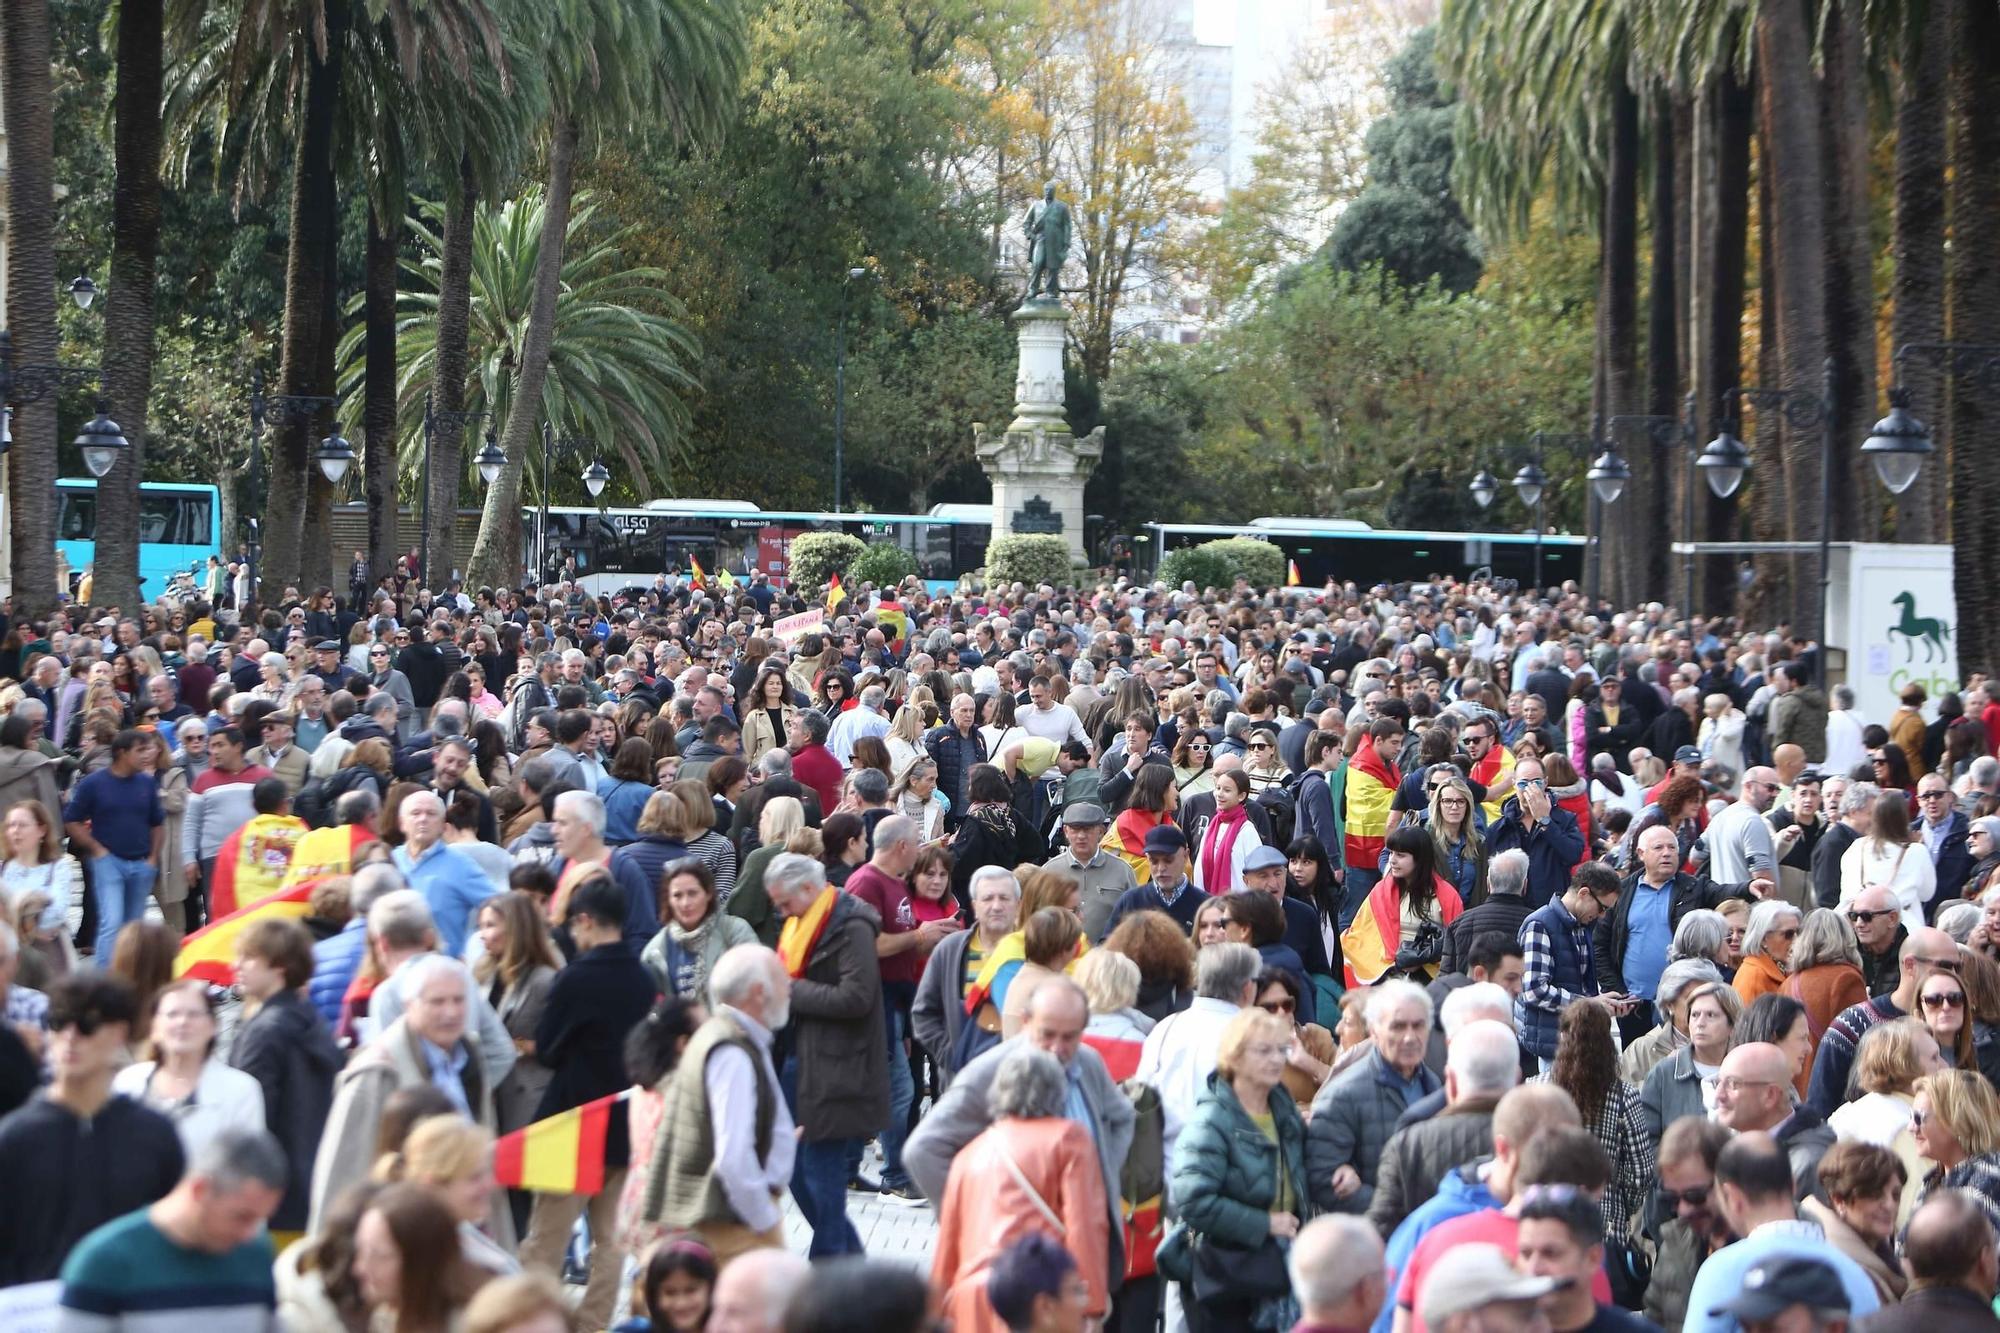 Miles de personas protestan en A Coruña contra la amnistía